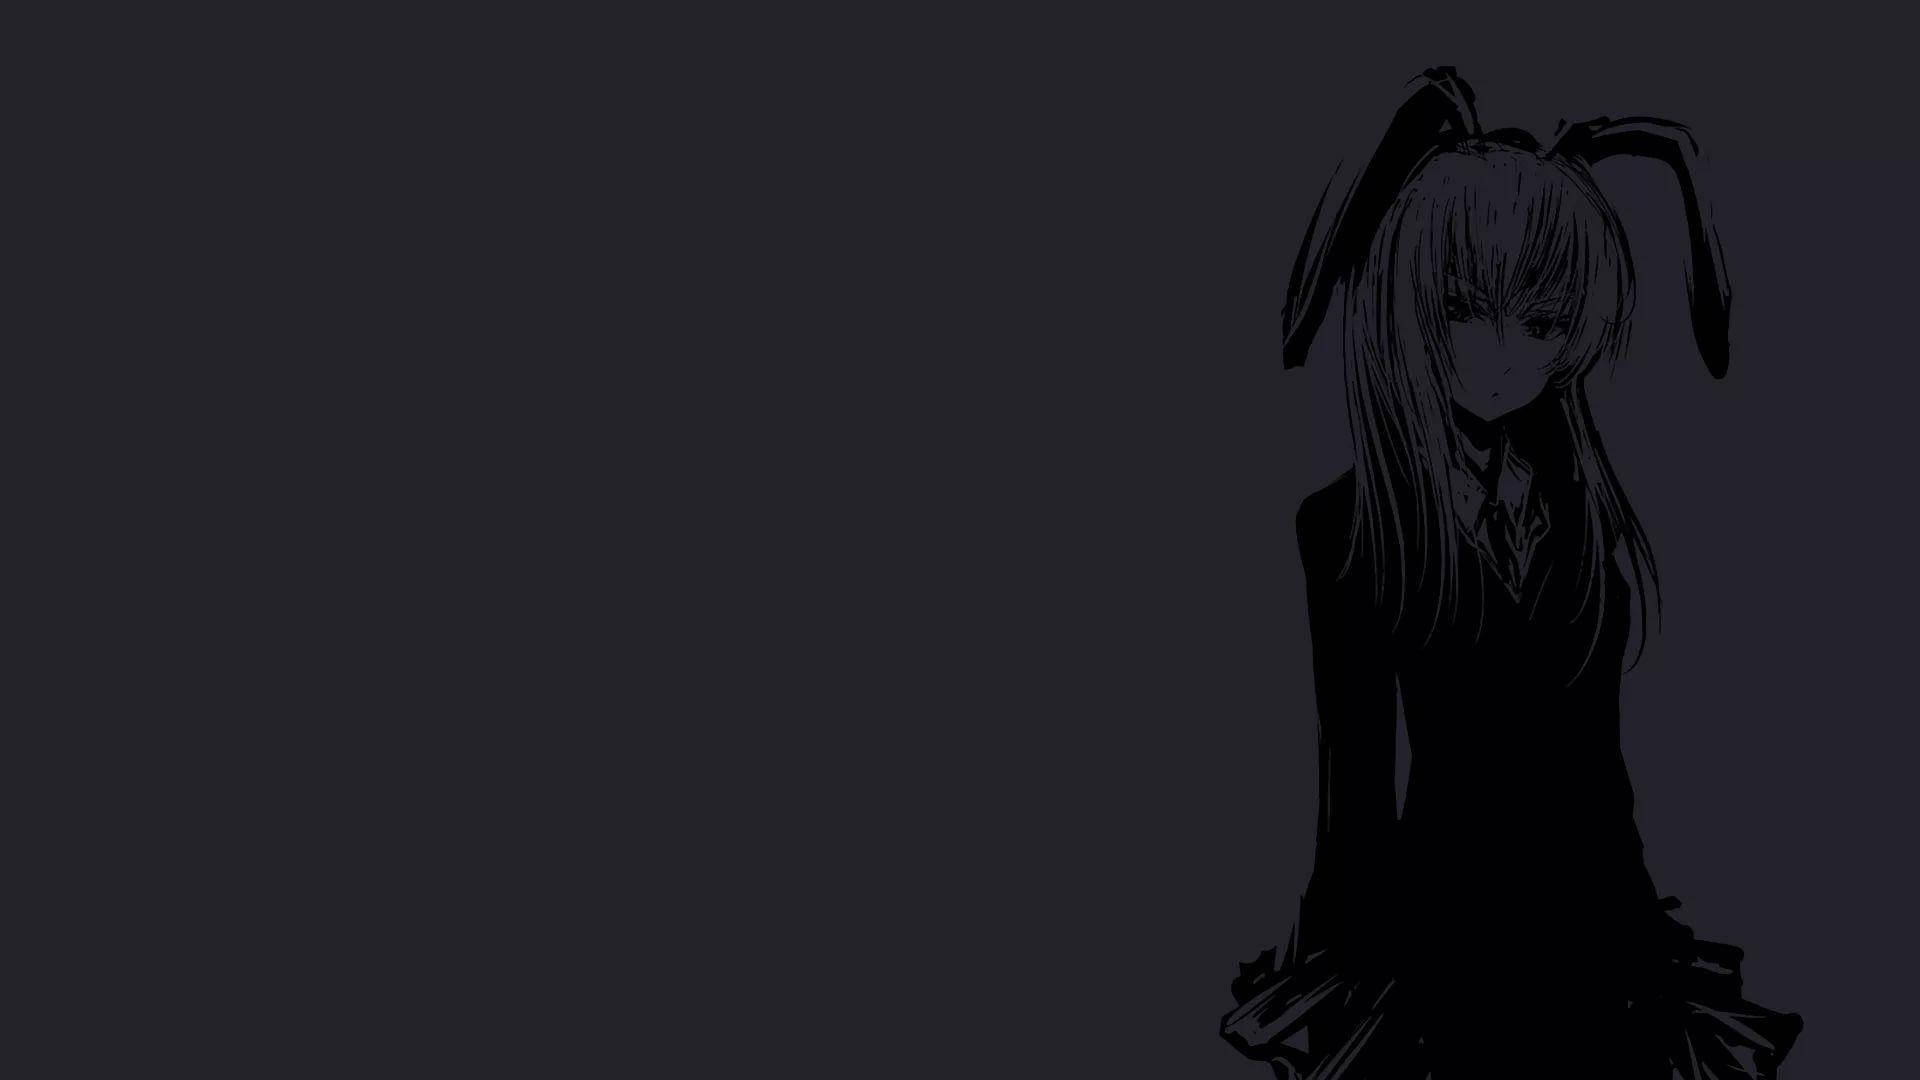 Bunny Ears Girl Dark Anime Aesthetic Desktop